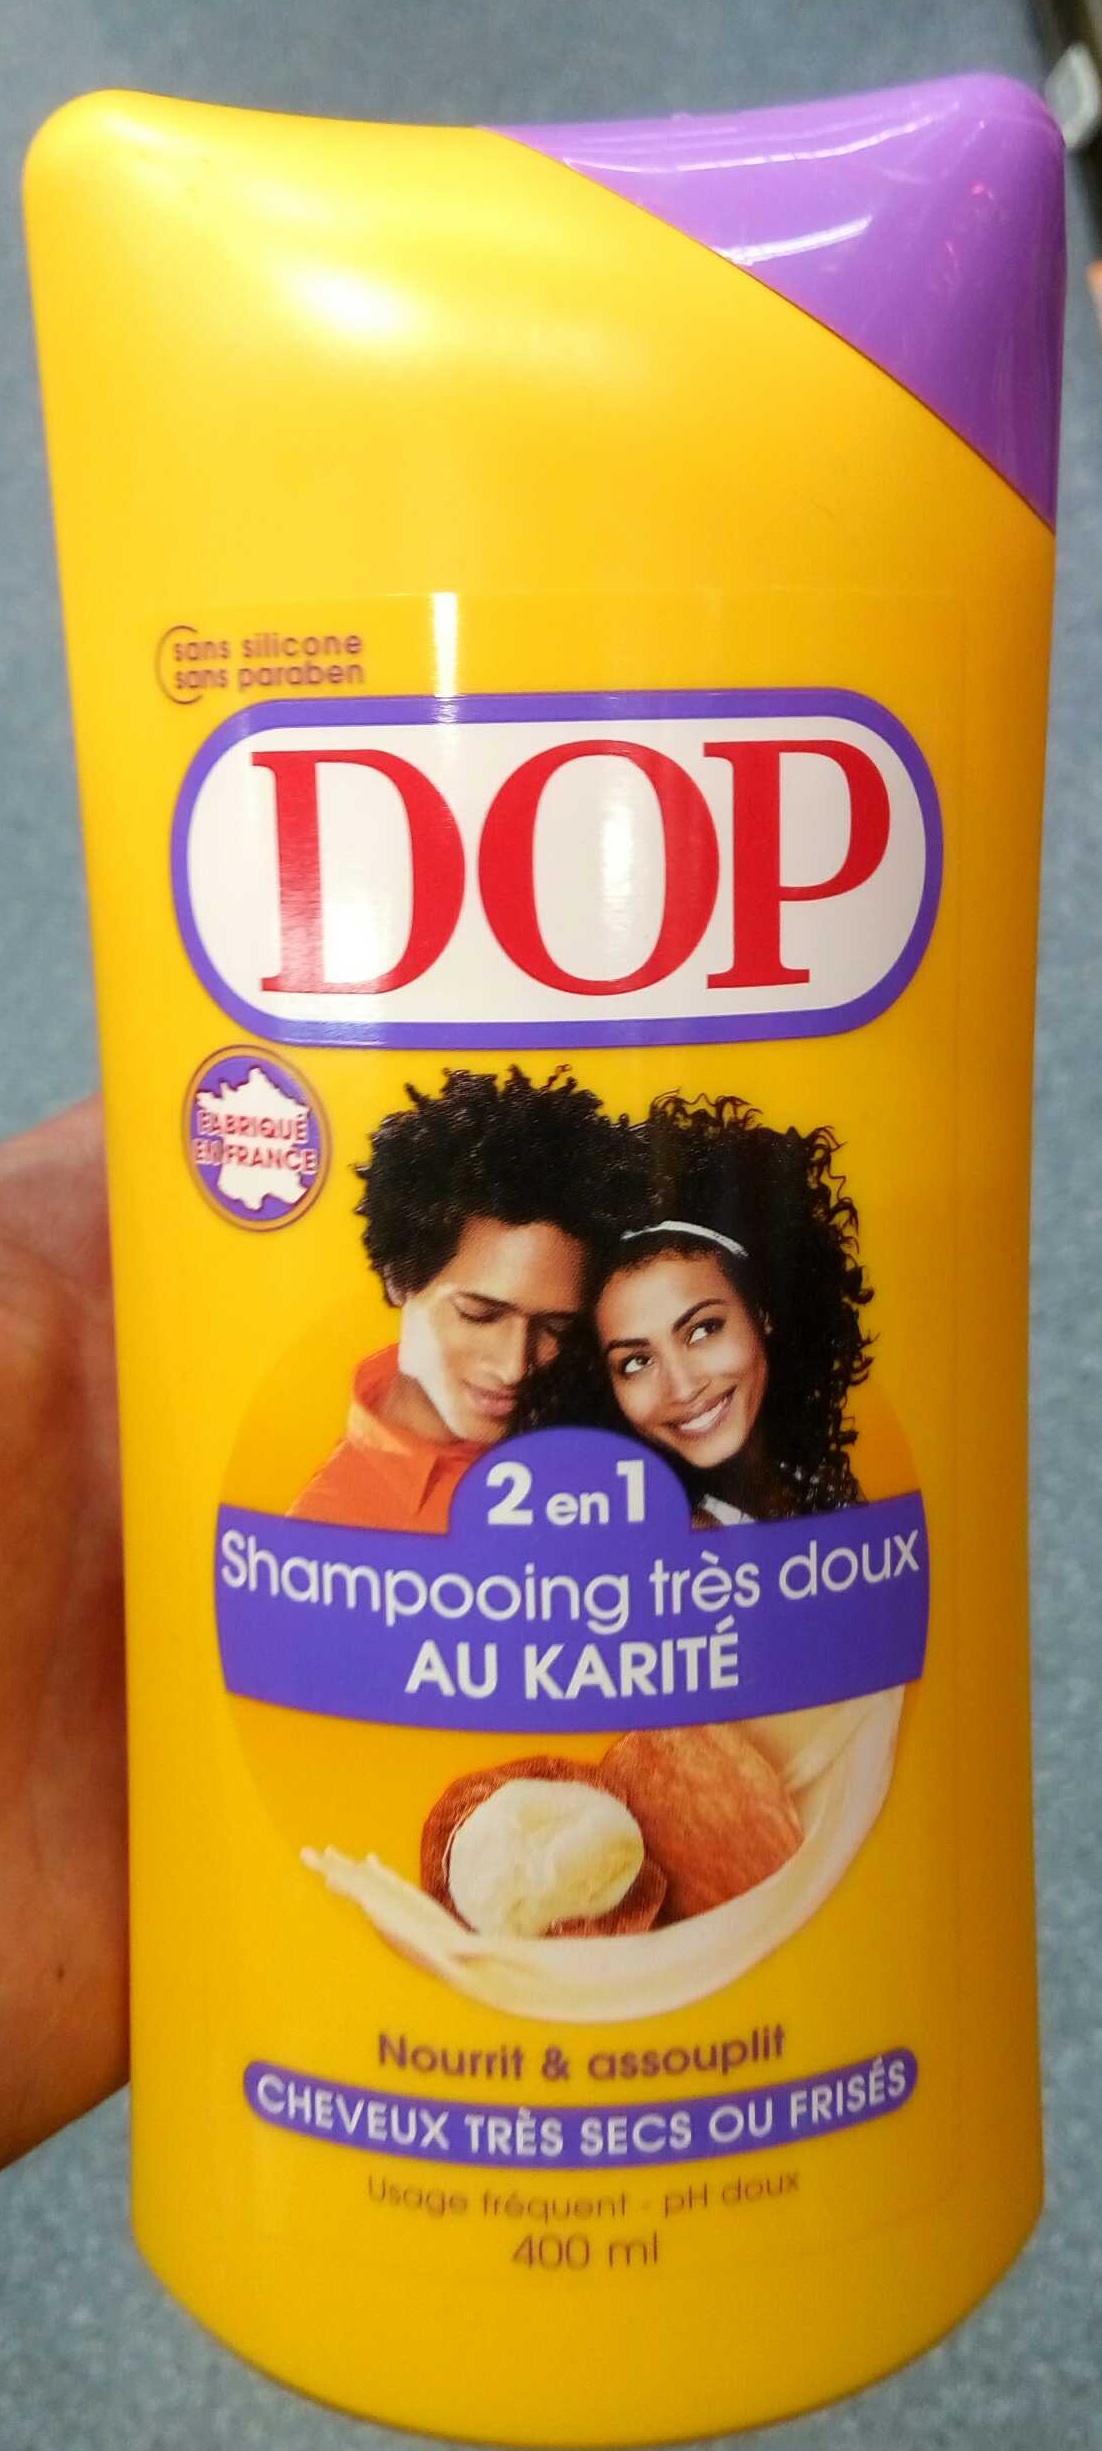 Shampooing très doux 2 en 1 au karité - Produit - fr